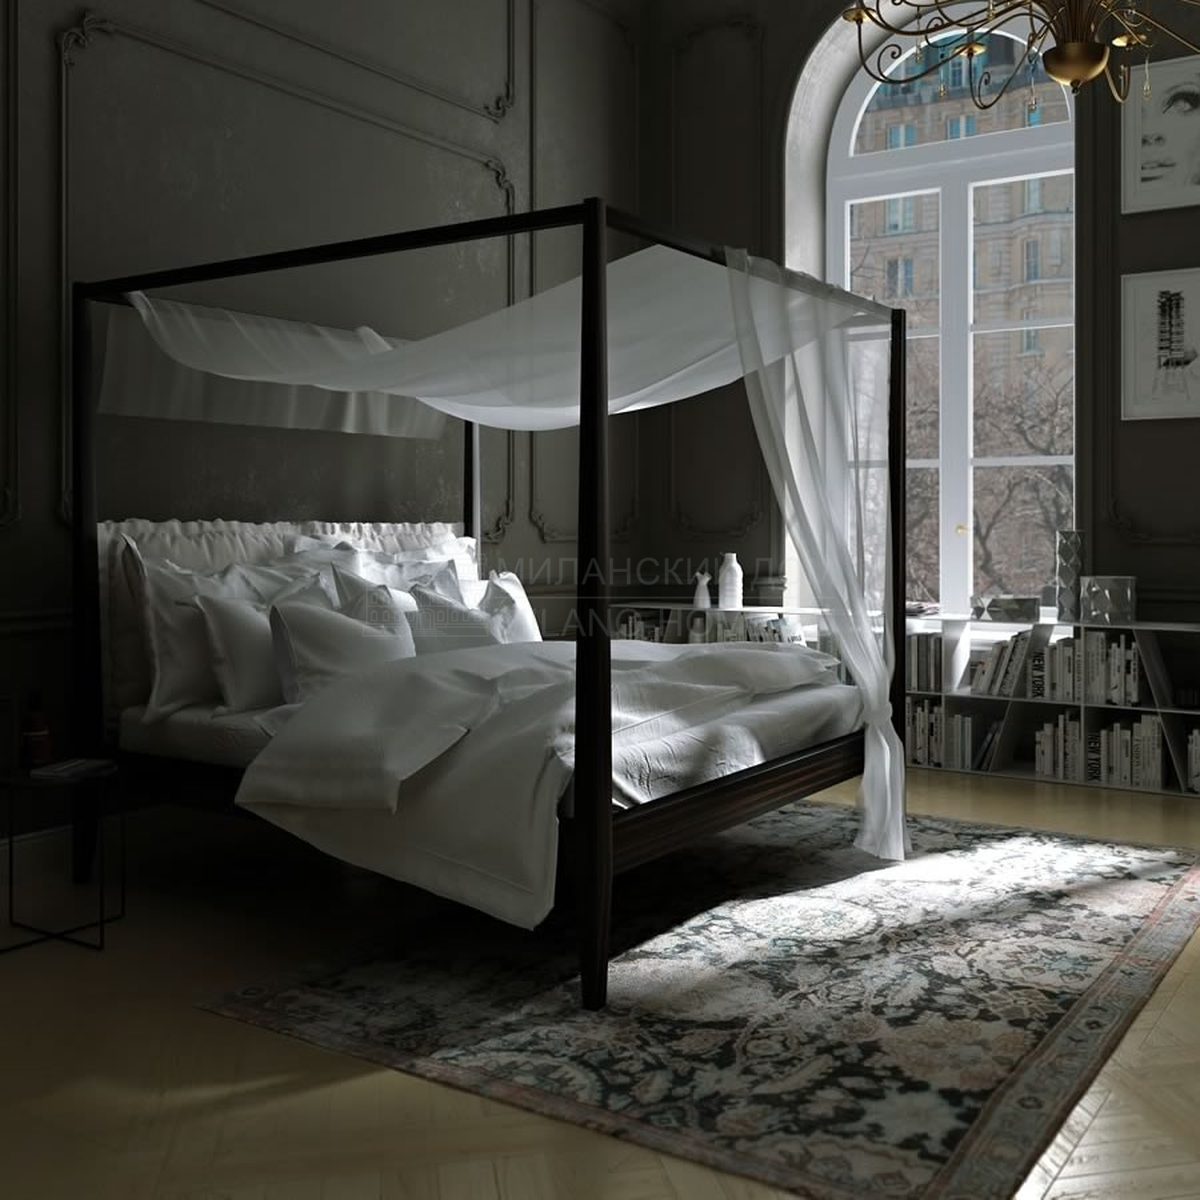 Двуспальная кровать Aida bed из Италии фабрики ASNAGHI / INEDITO